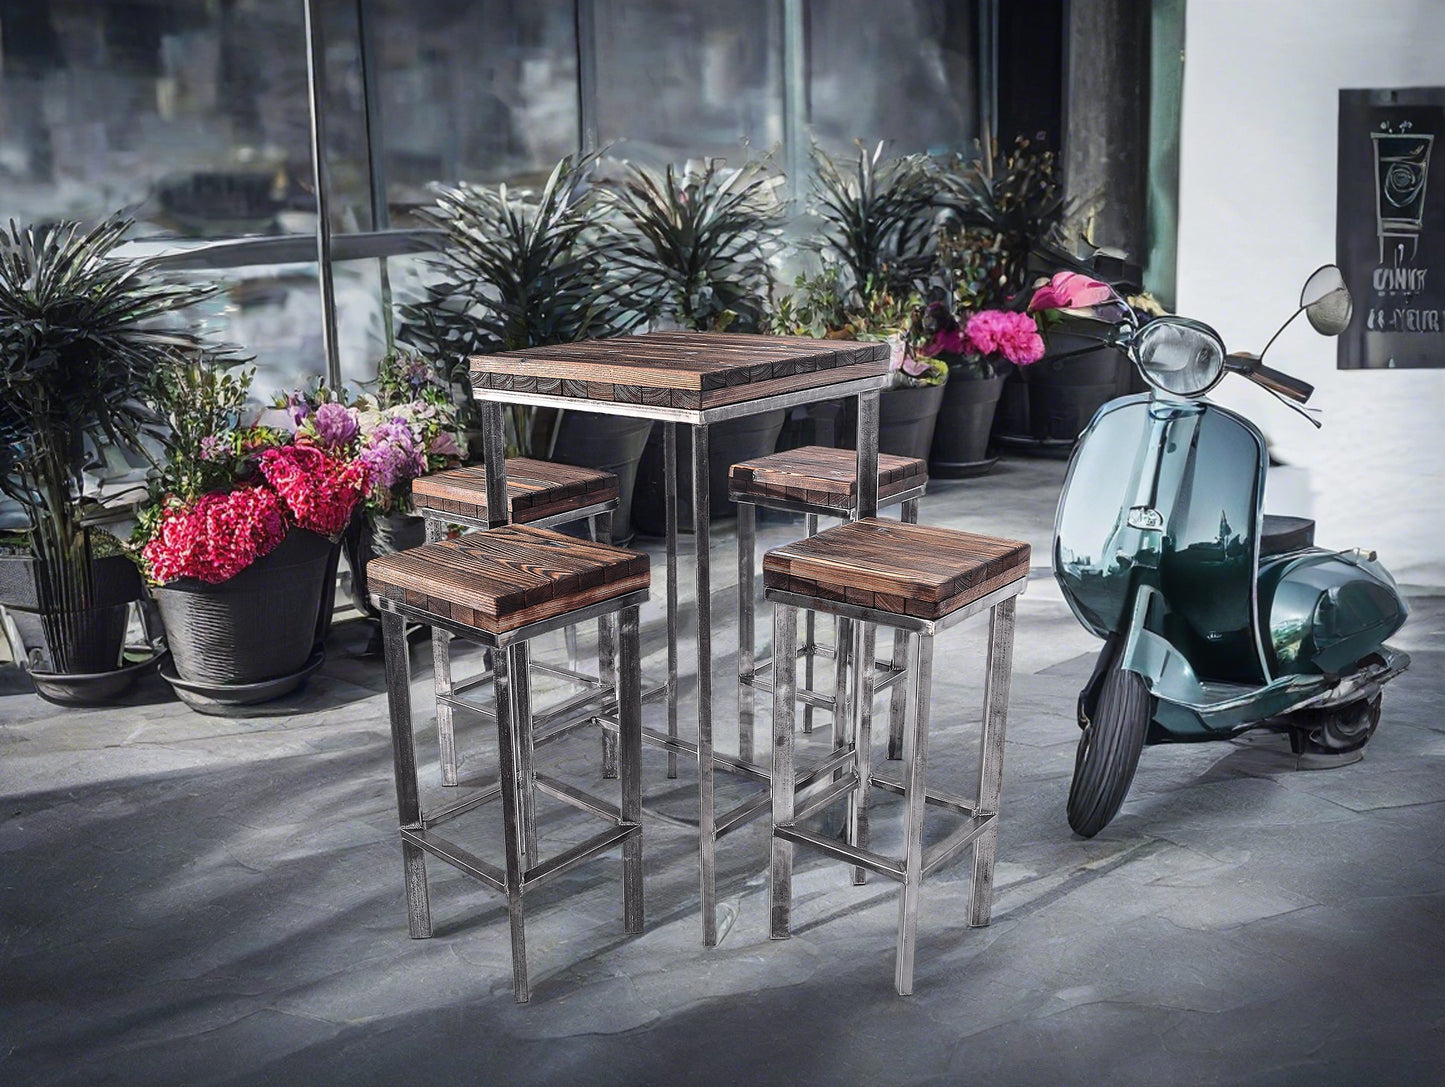 CHYRKA® Mesa de bar taburete de bar LS mesa de bar SAMBOR muebles de bar loft bar vintage diseño industrial hecho a mano madera metal